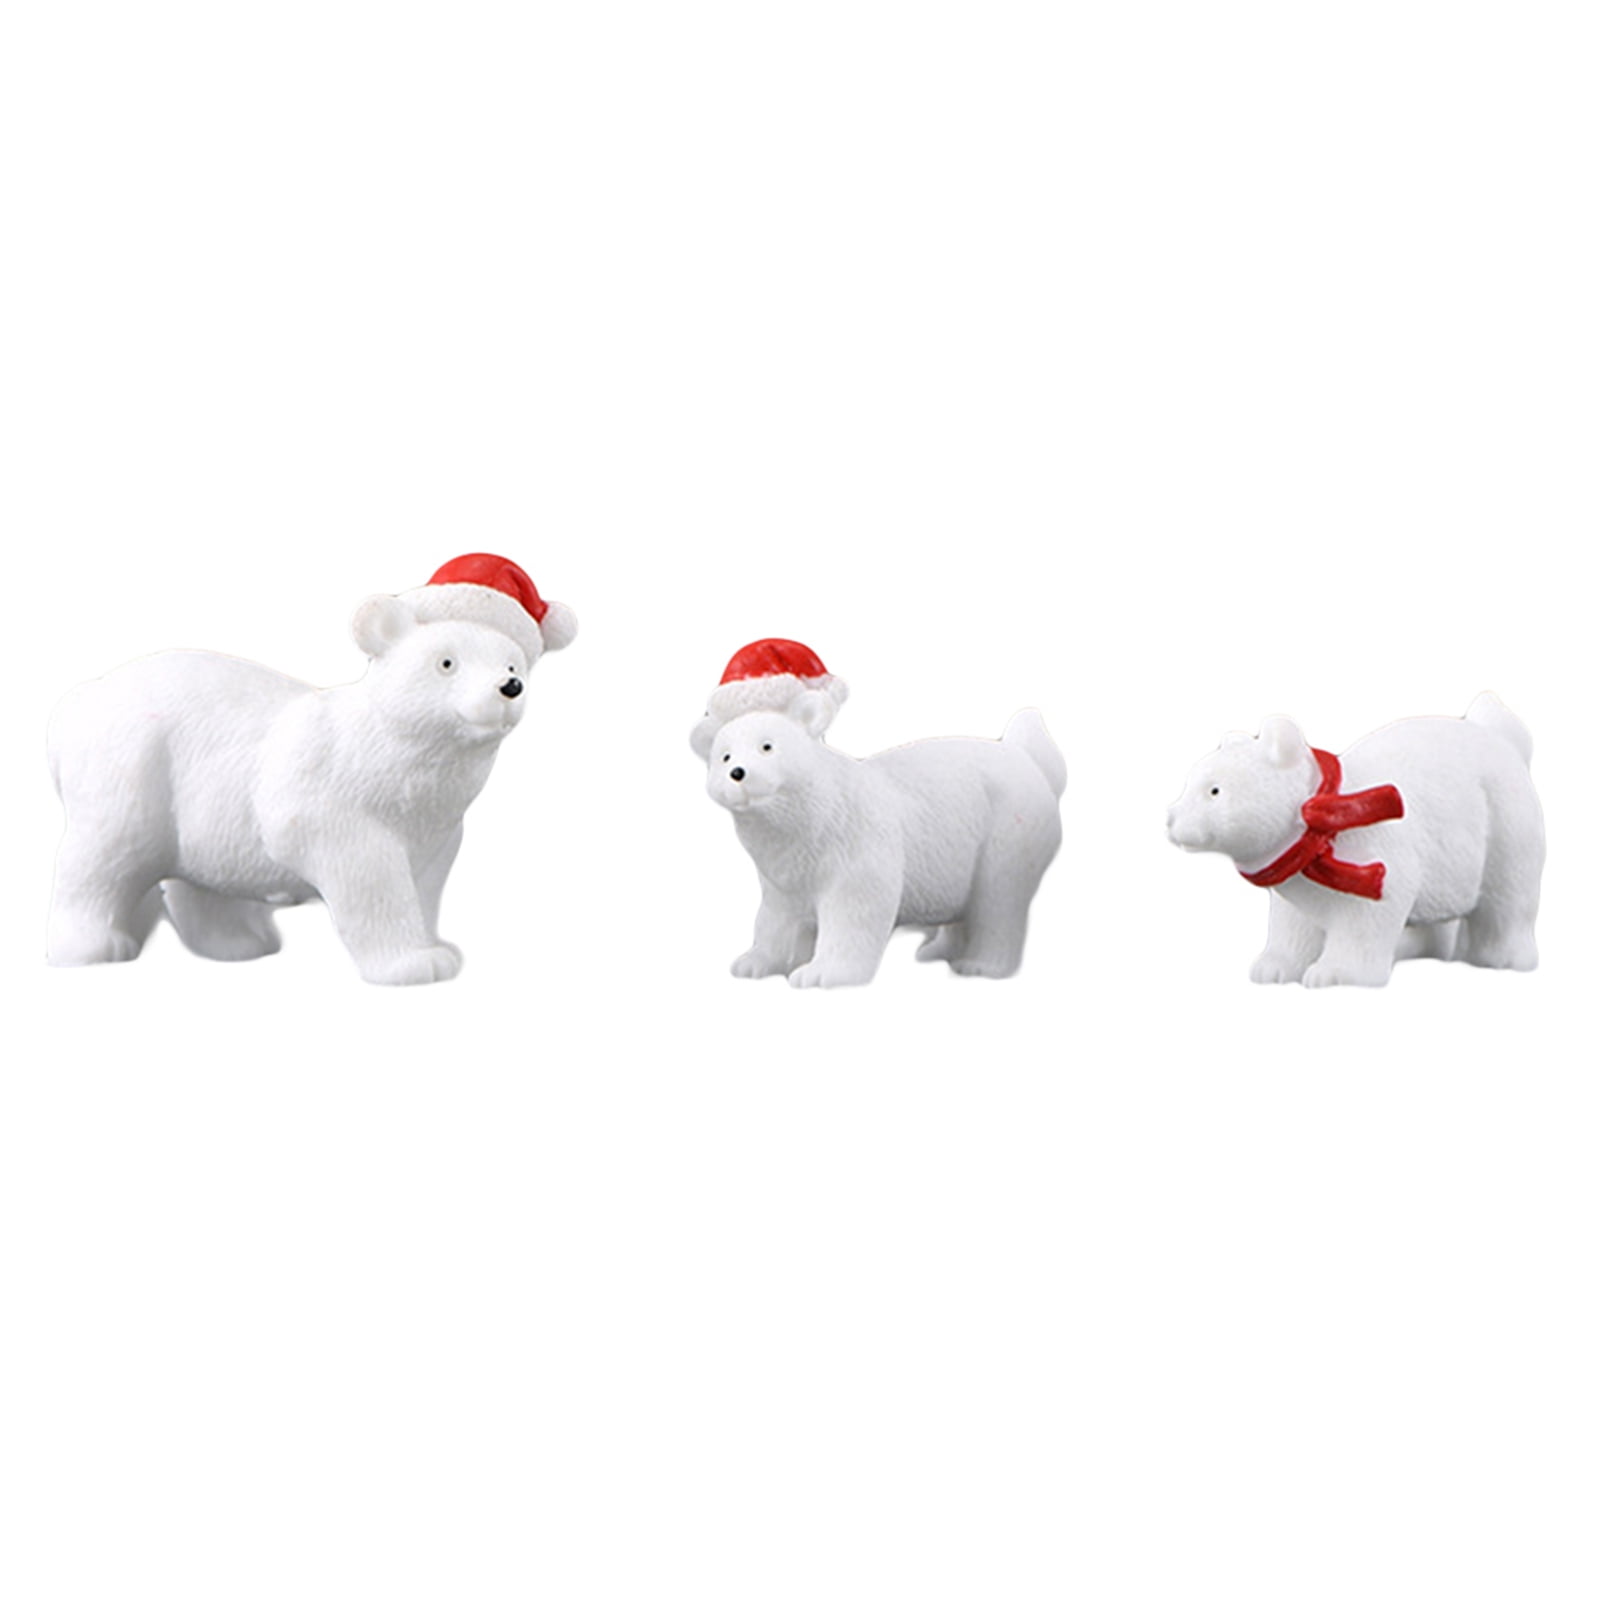 Miniatures Decor Polar Animal Model Figurines Polar Bear DIY Dollhouse 